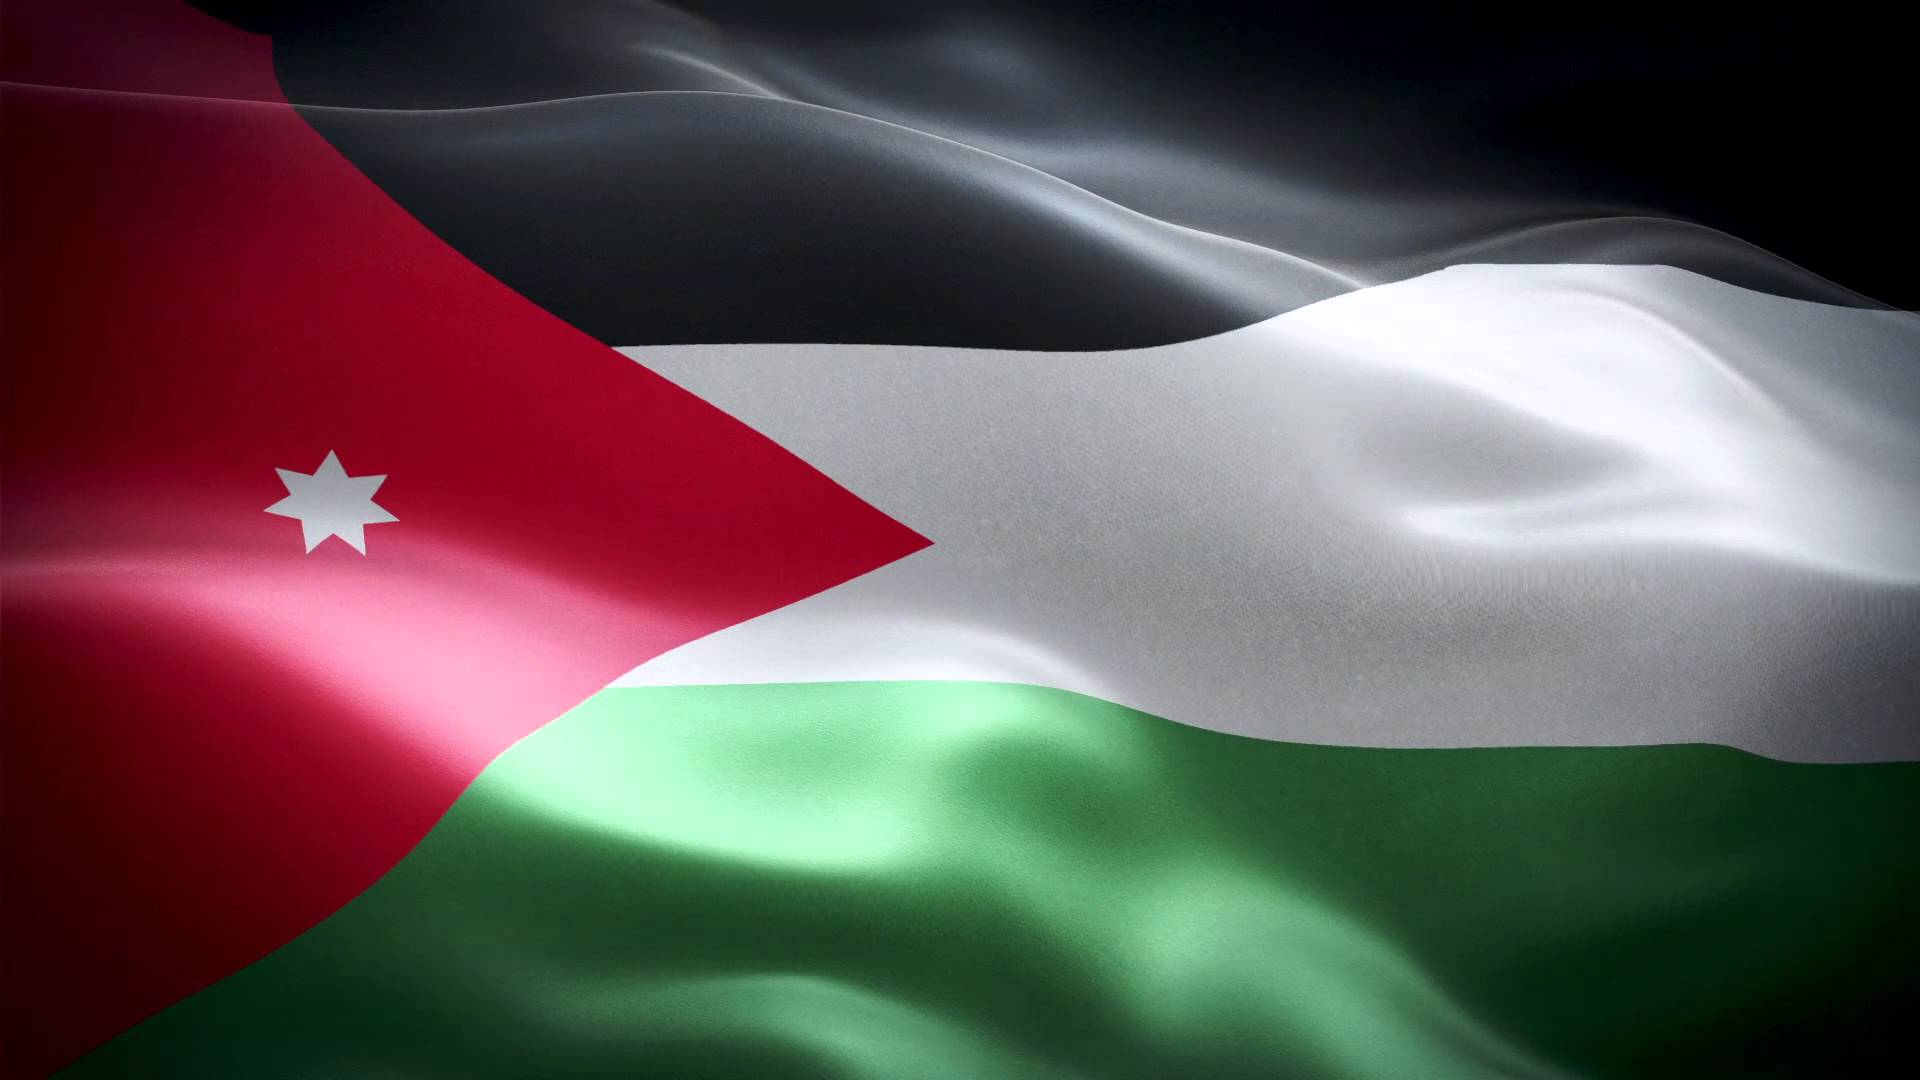 الام ترمز رؤوس النجمة في العلم الأردني